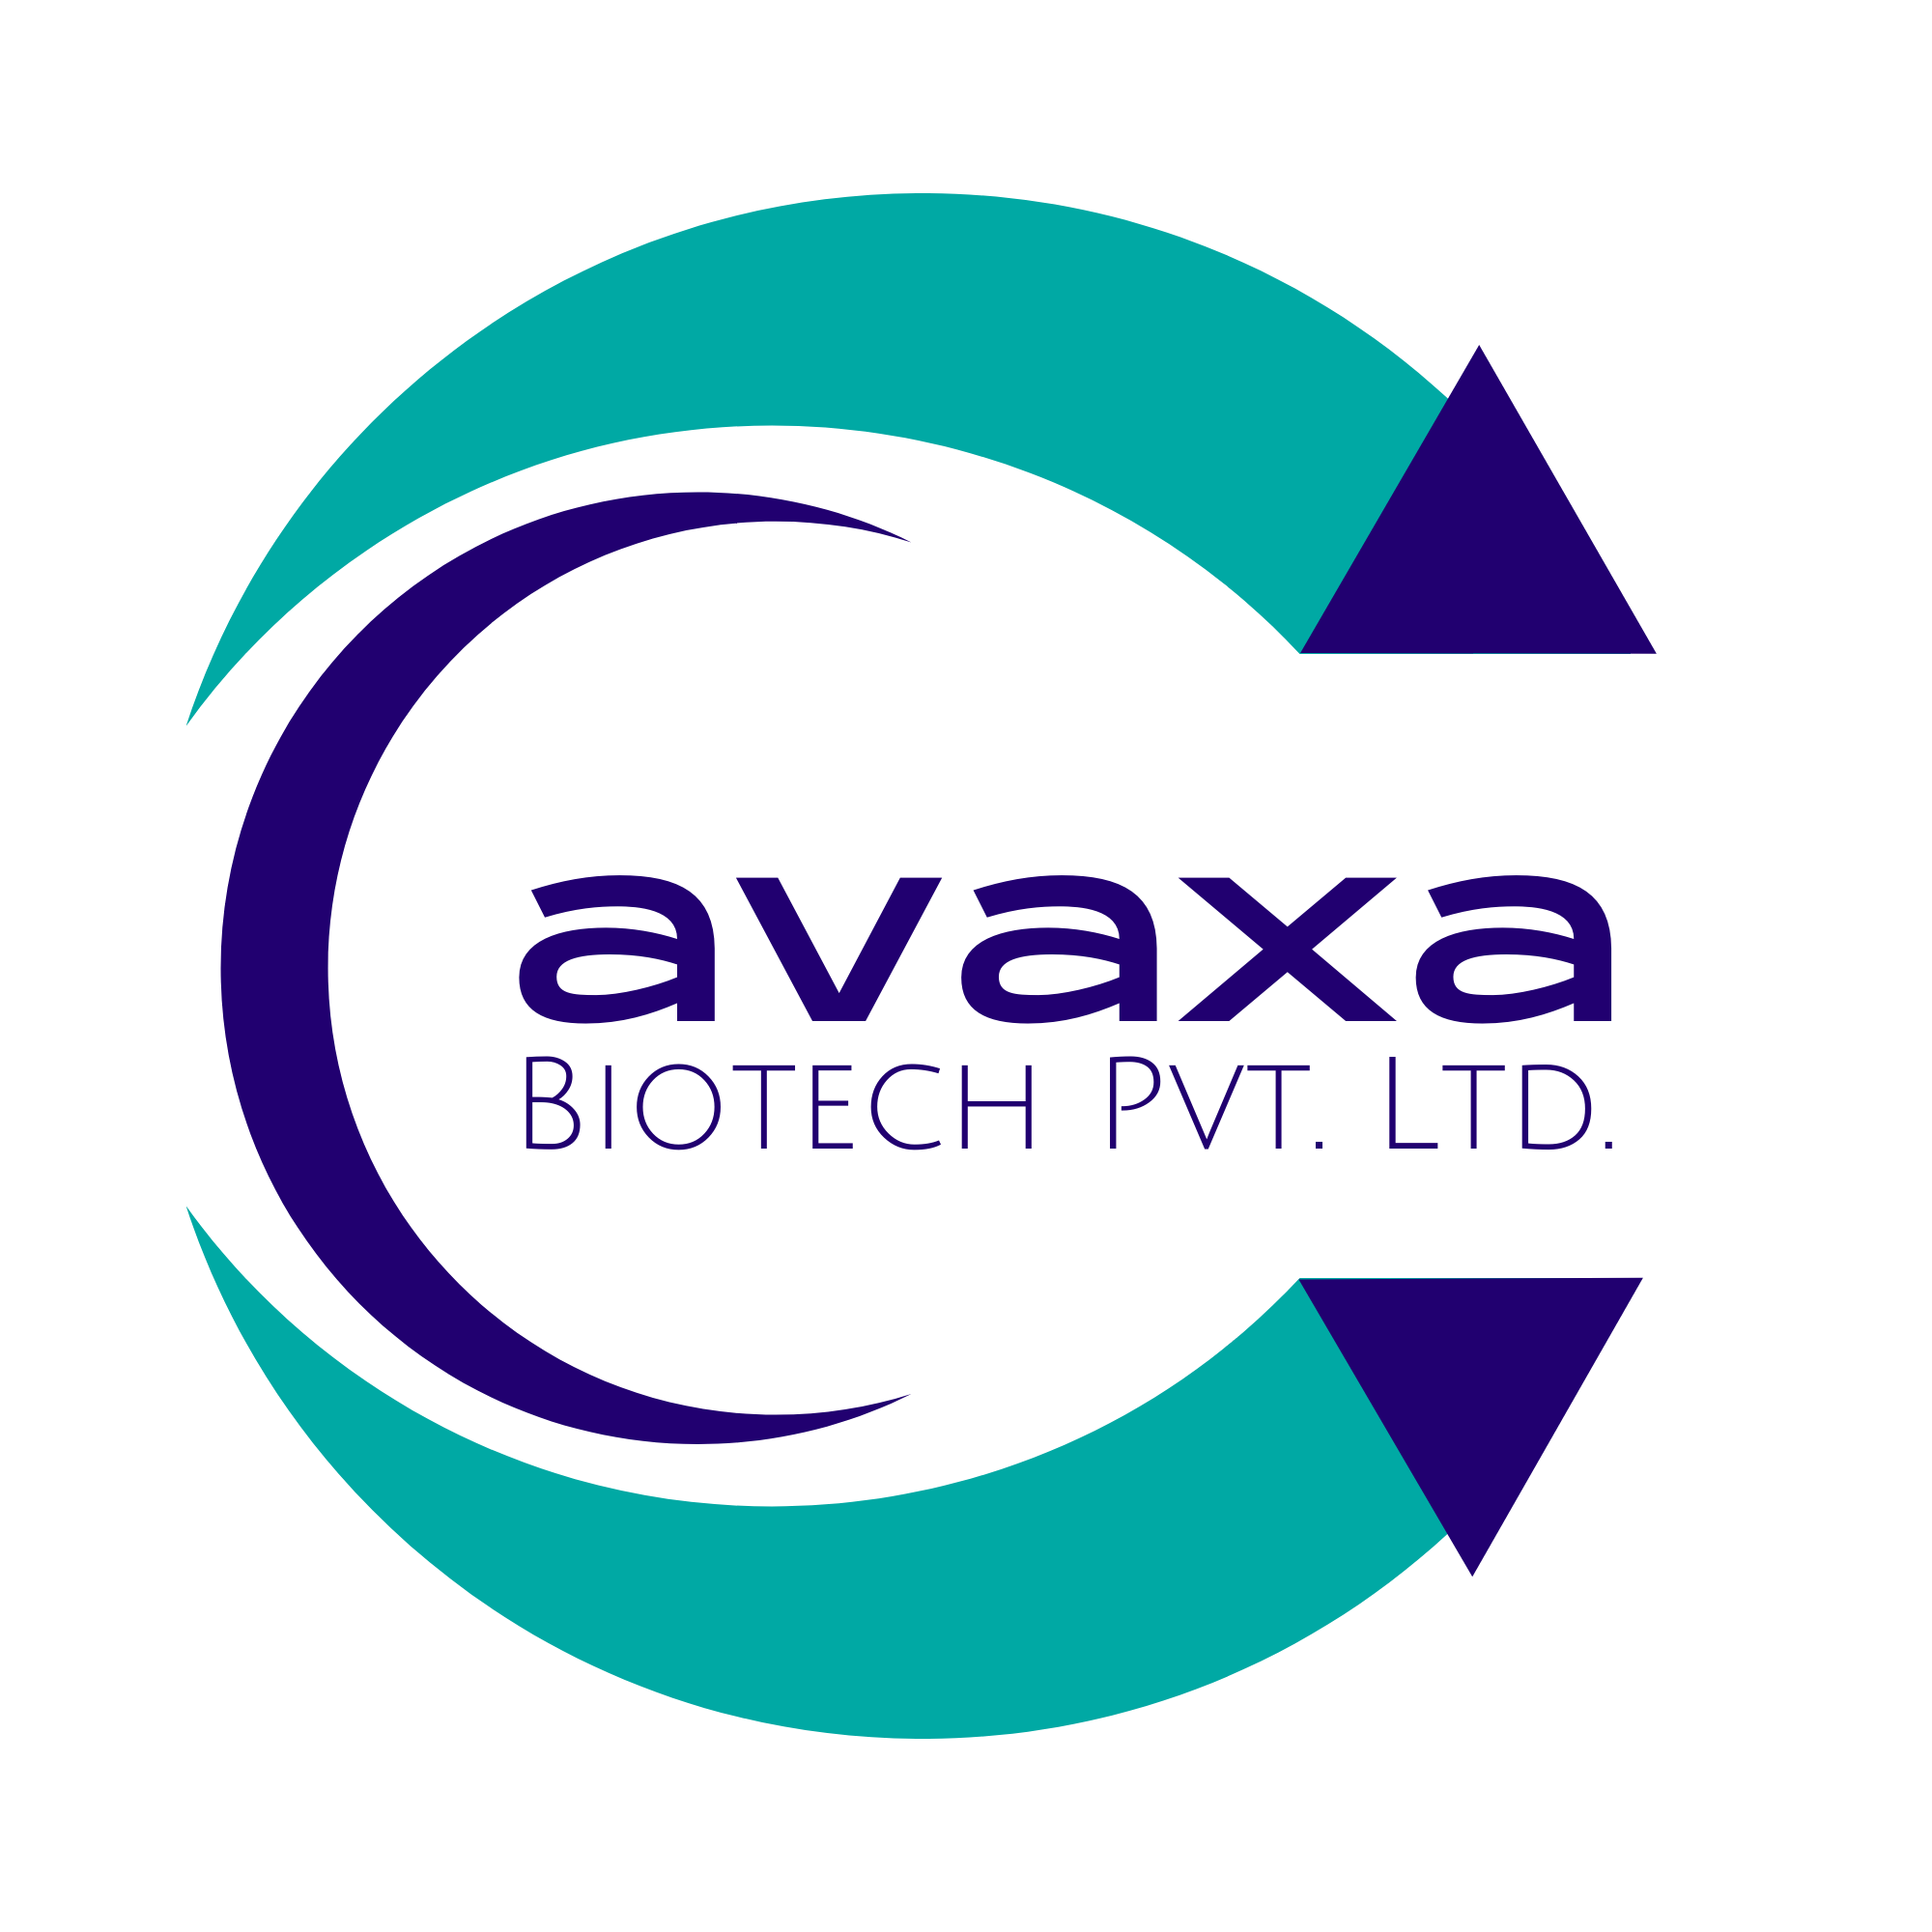 Cavaxa-biotech-pvt.-ltd.